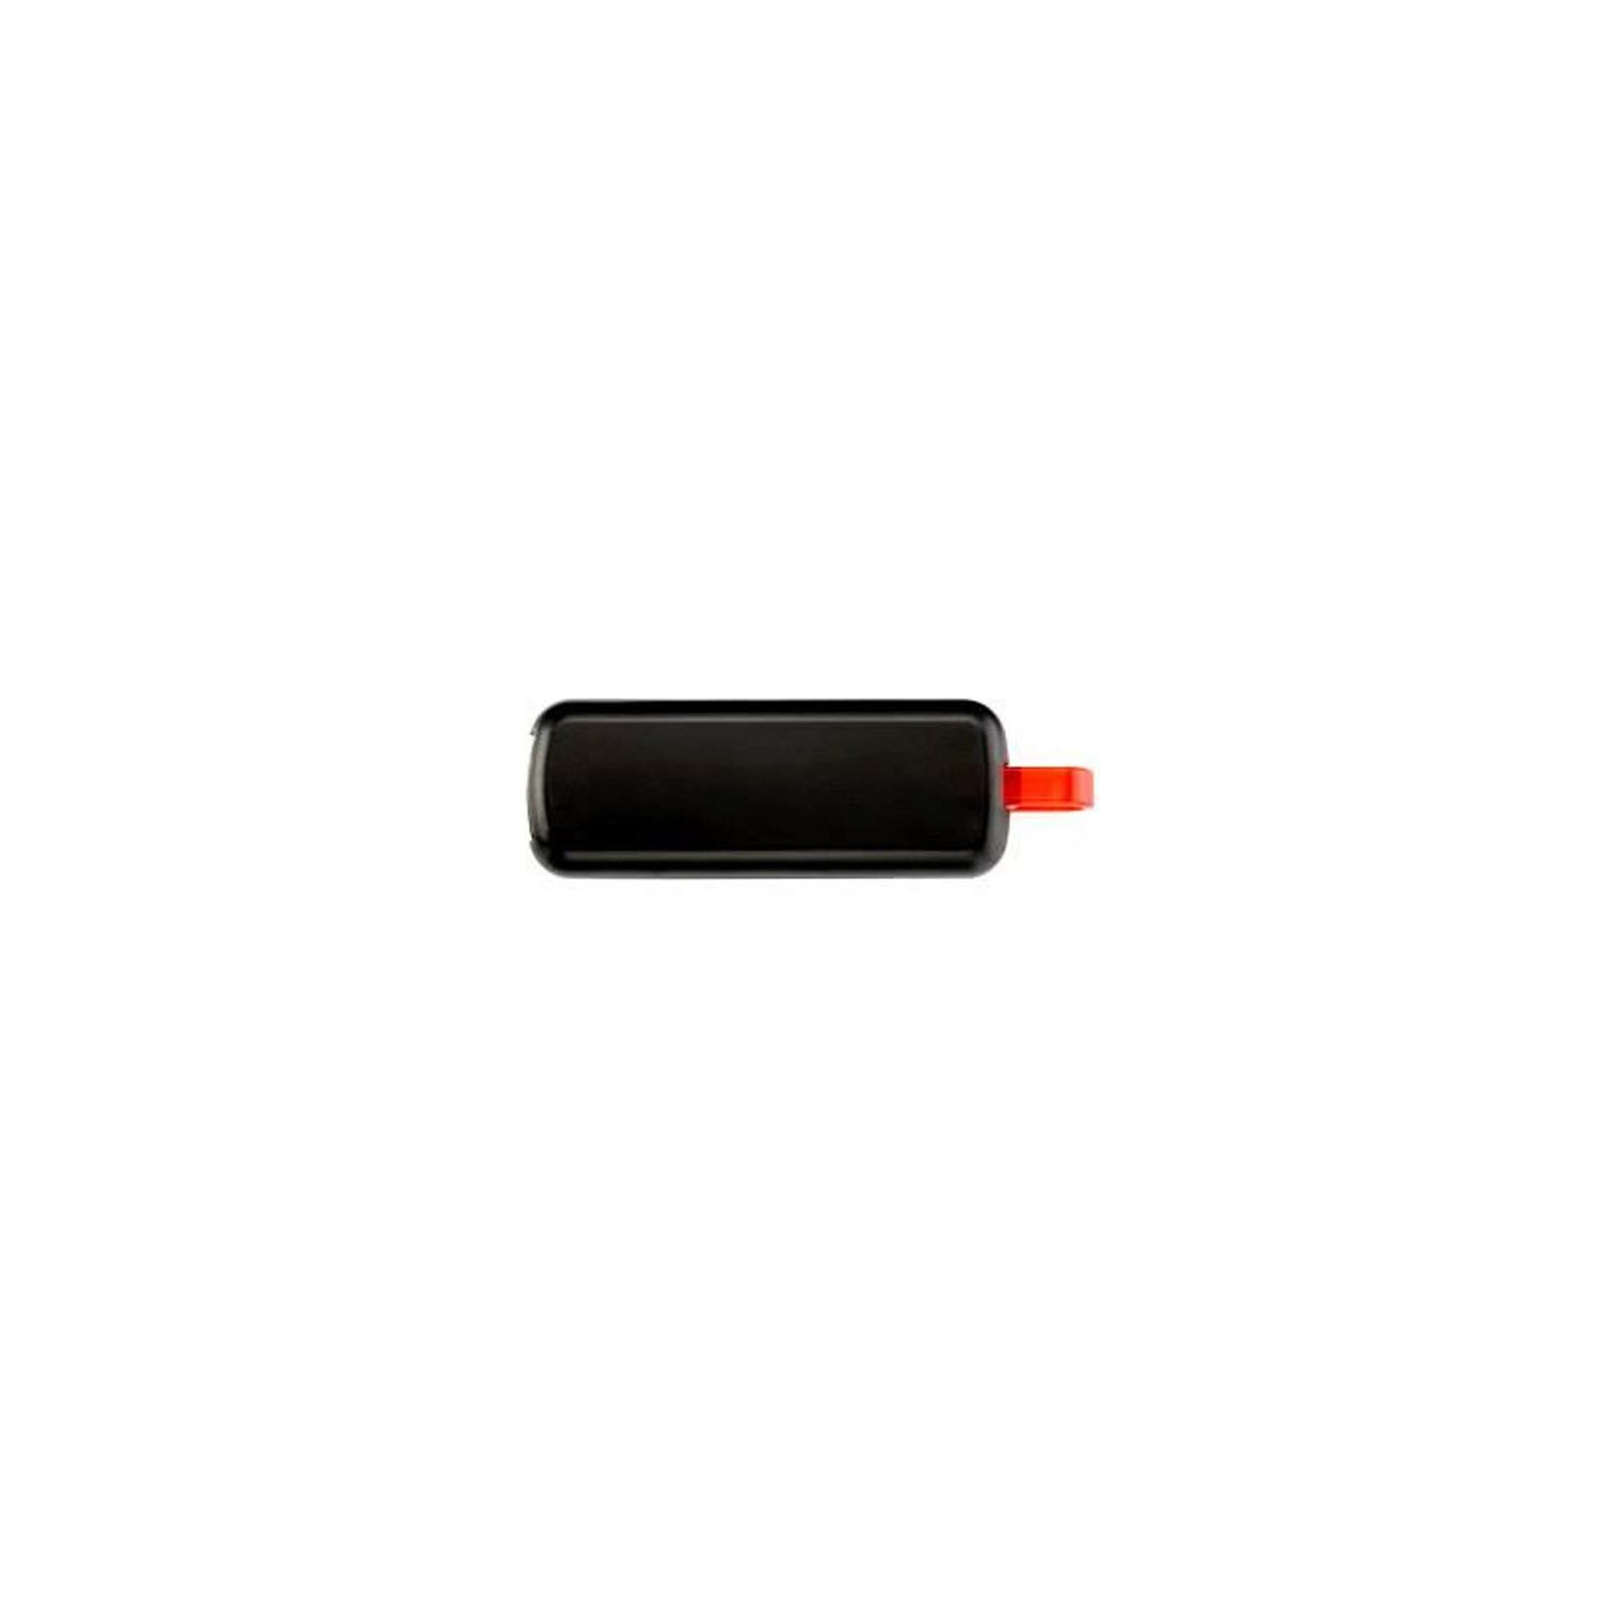 USB флеш накопичувач Apacer 8GB AH326 black USB 2.0 (AP8GAH326B-1) зображення 2